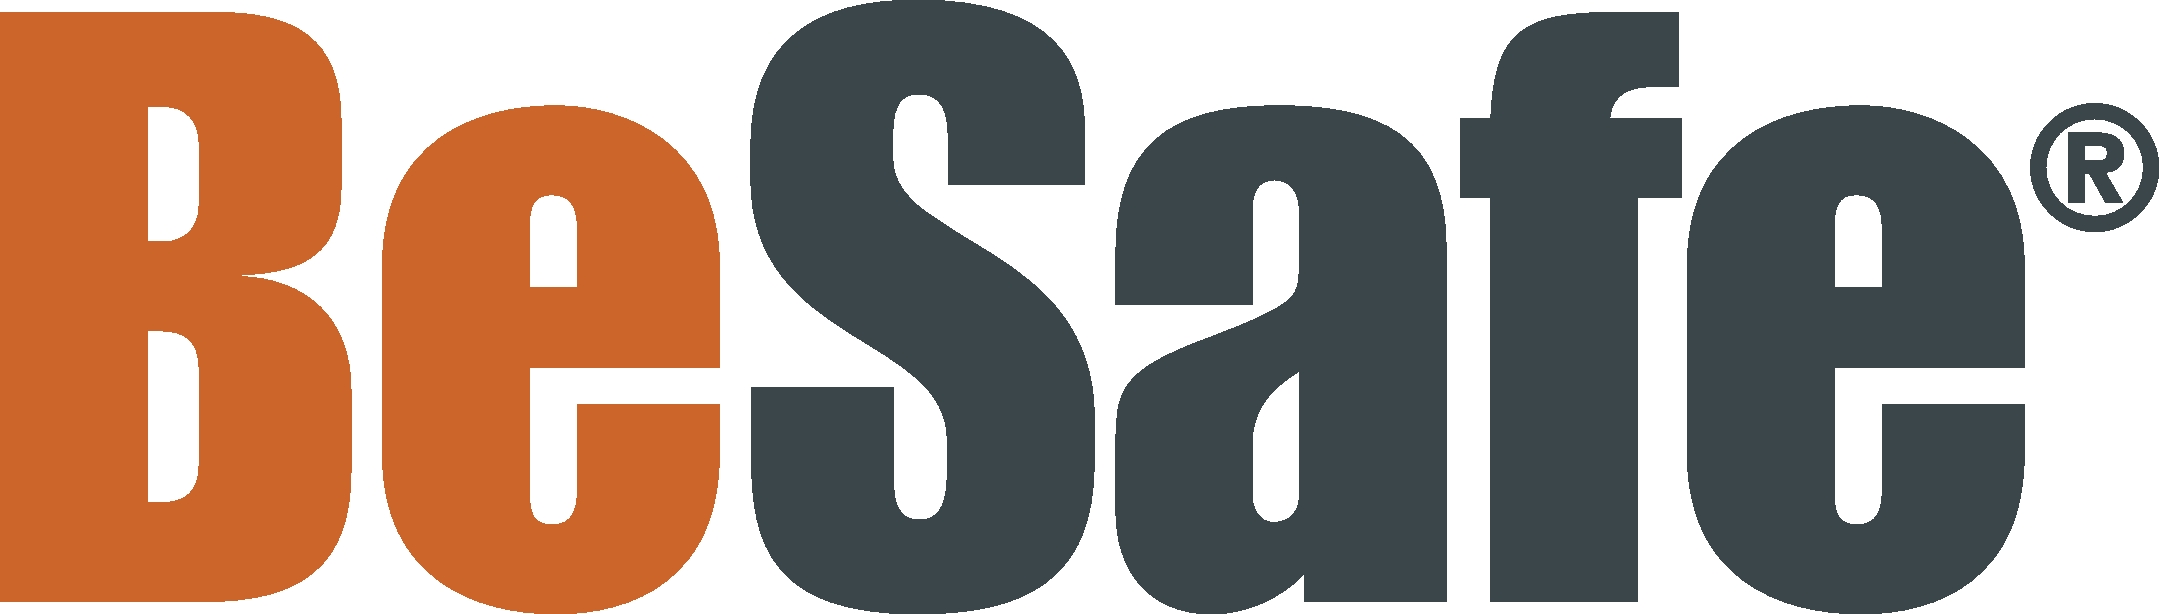 Cocuklar Icin Güvenlidir Logo photo - 1